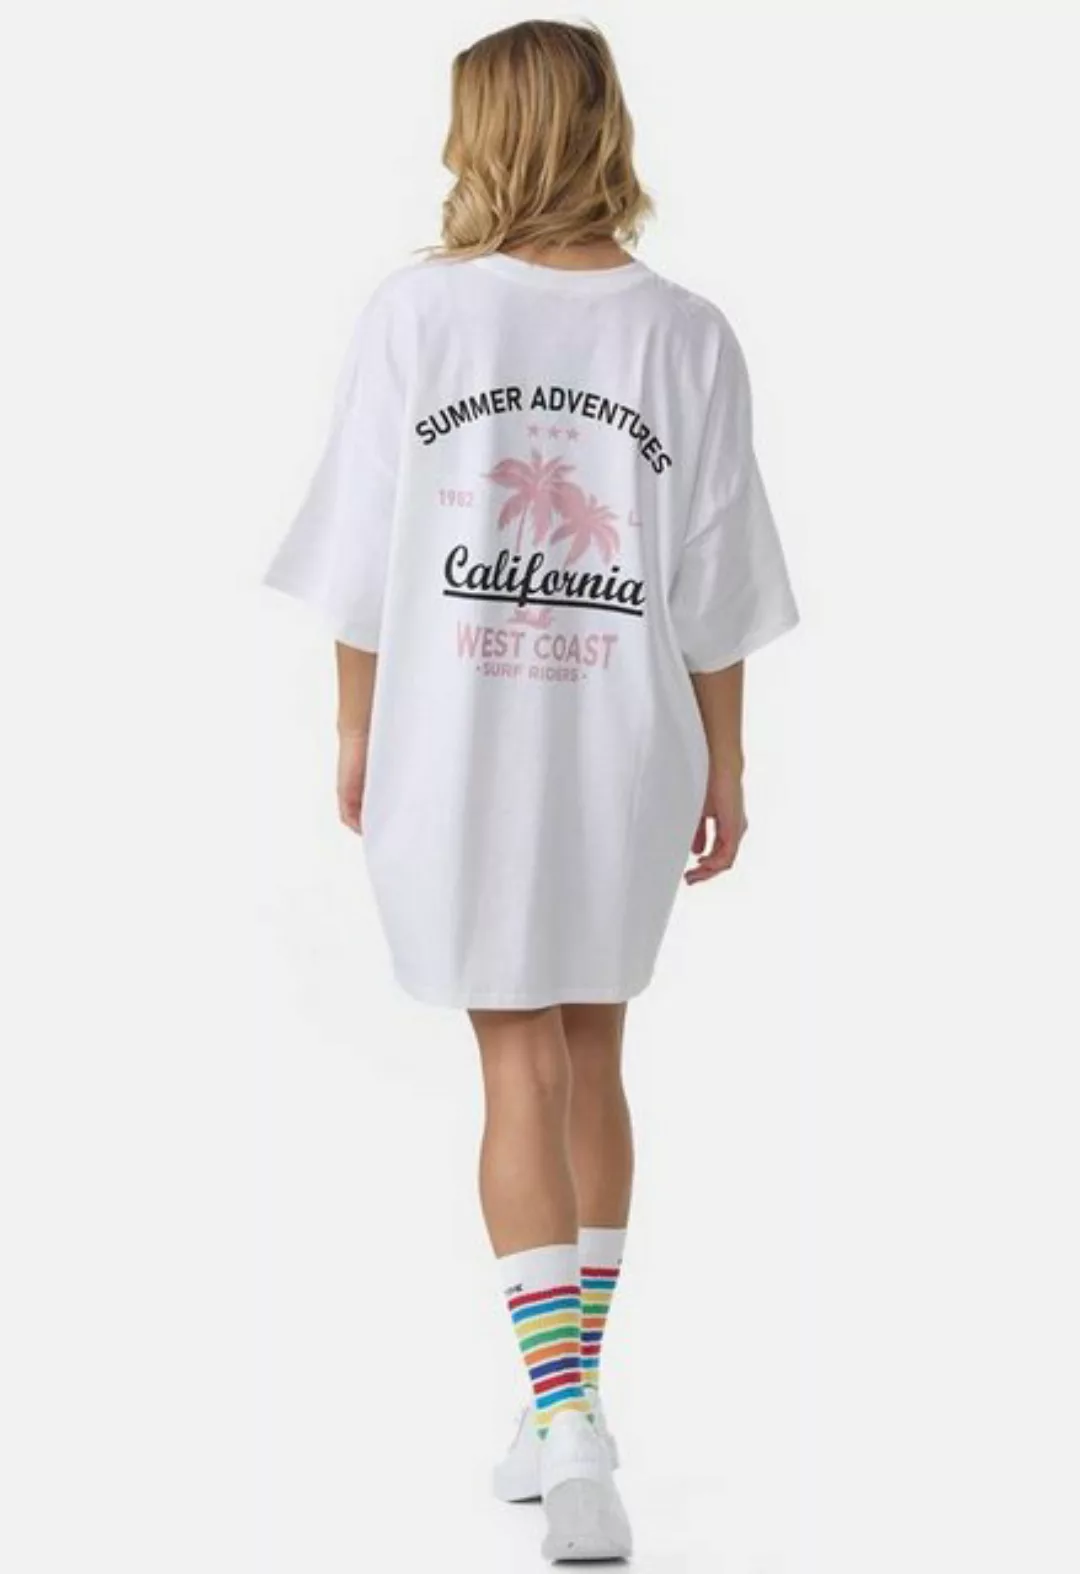 Worldclassca T-Shirt Worldclassca Oversized California Print T-Shirt lang S günstig online kaufen